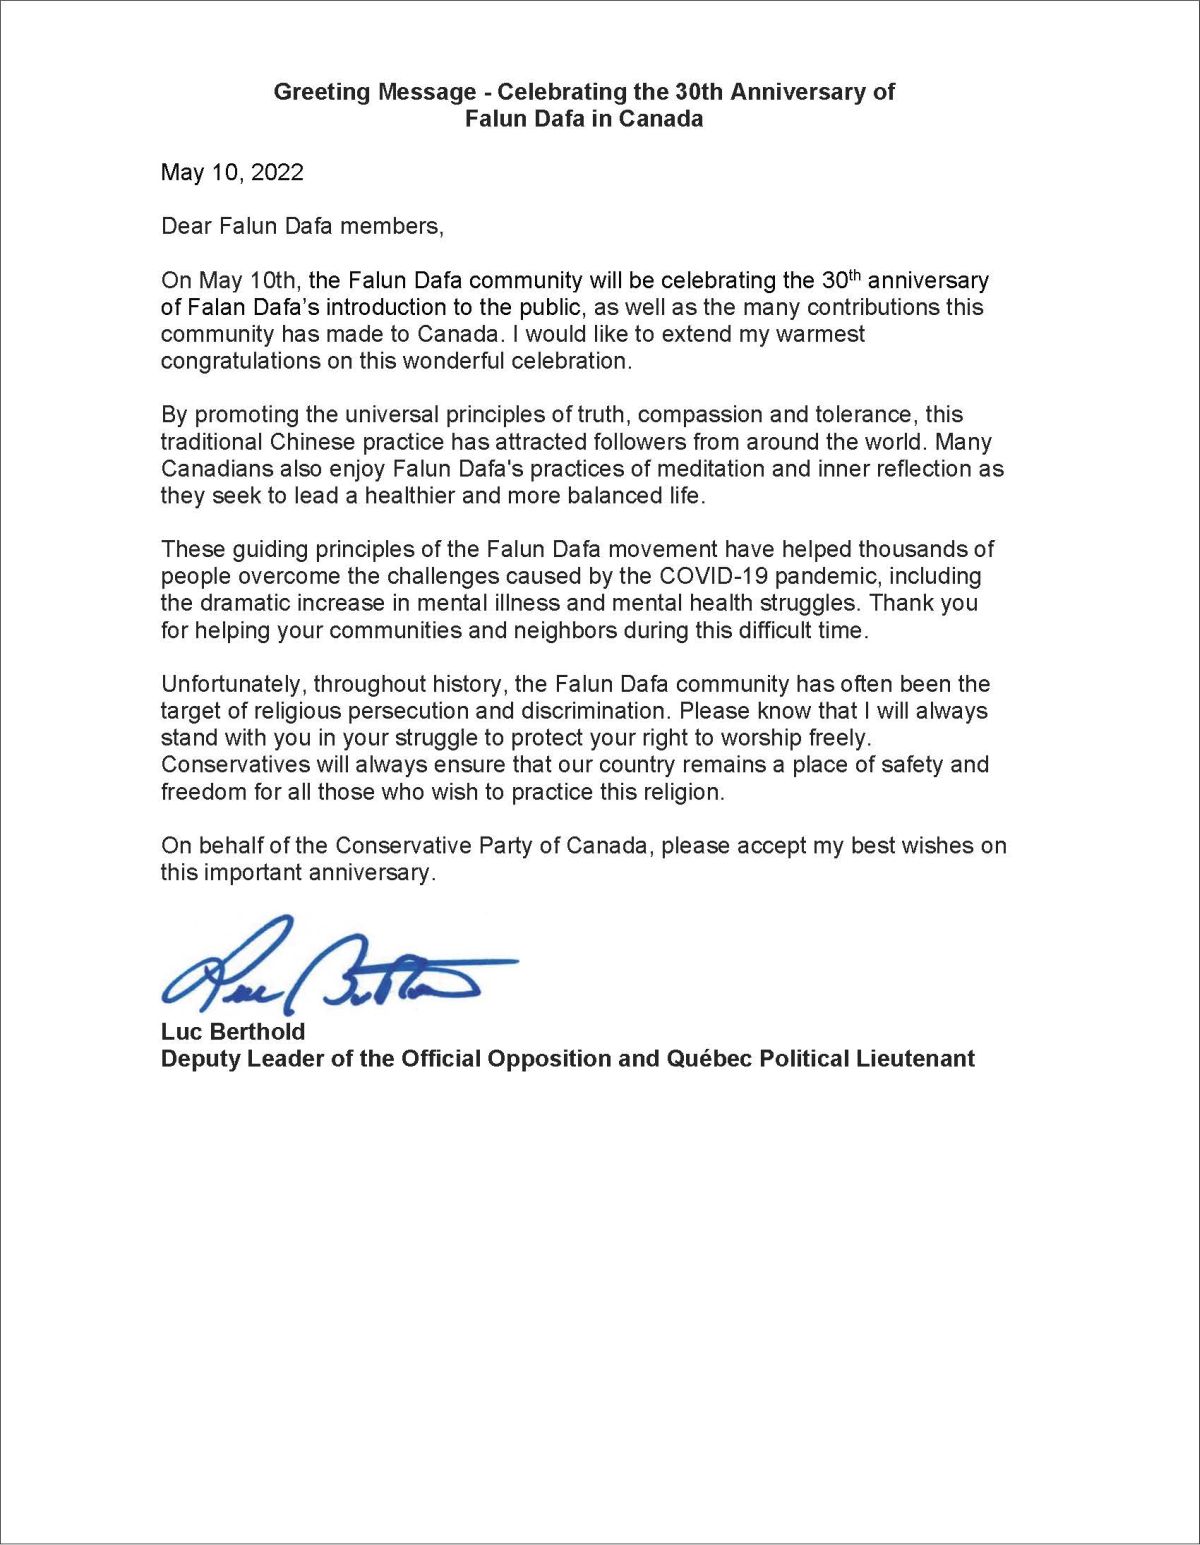 '图2：加拿大联邦保守党副党领、魁北克政治中尉Luc Berthold为世界法轮大法日庆祝活动发来的贺信。'